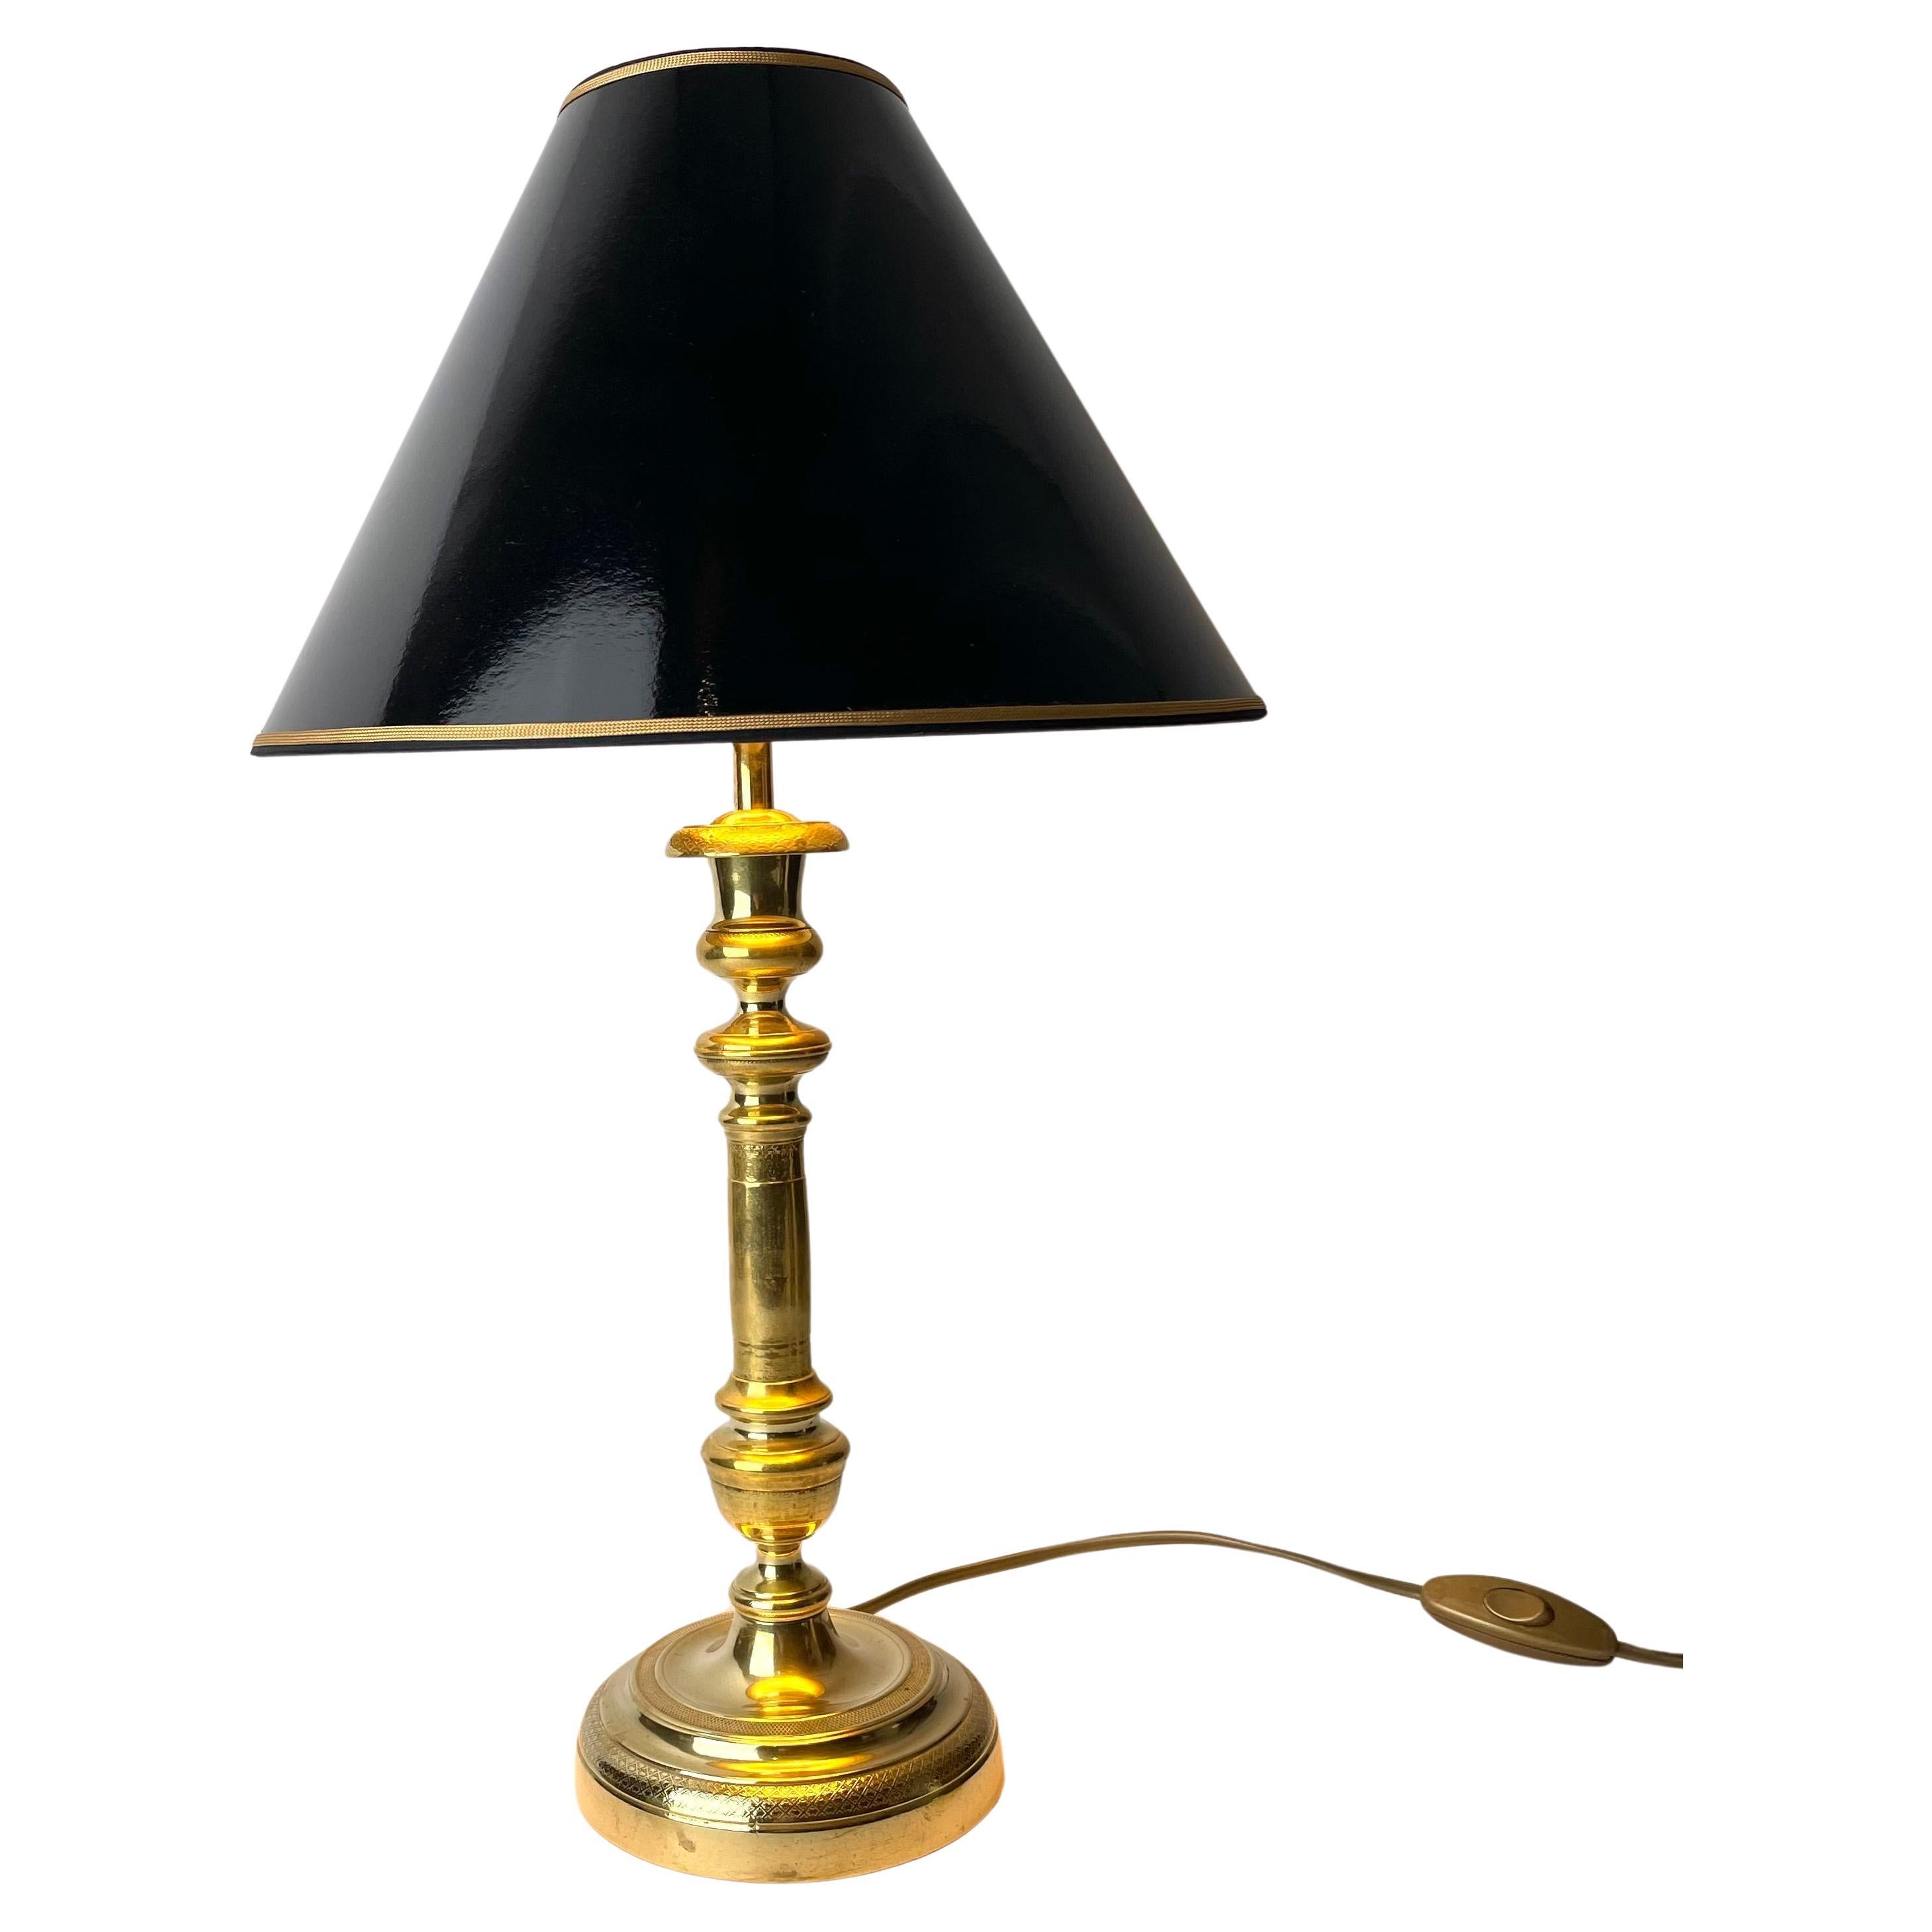 Magnifique lampe de table, chandelier Empire à l'origine en bronze. À partir des années 1820